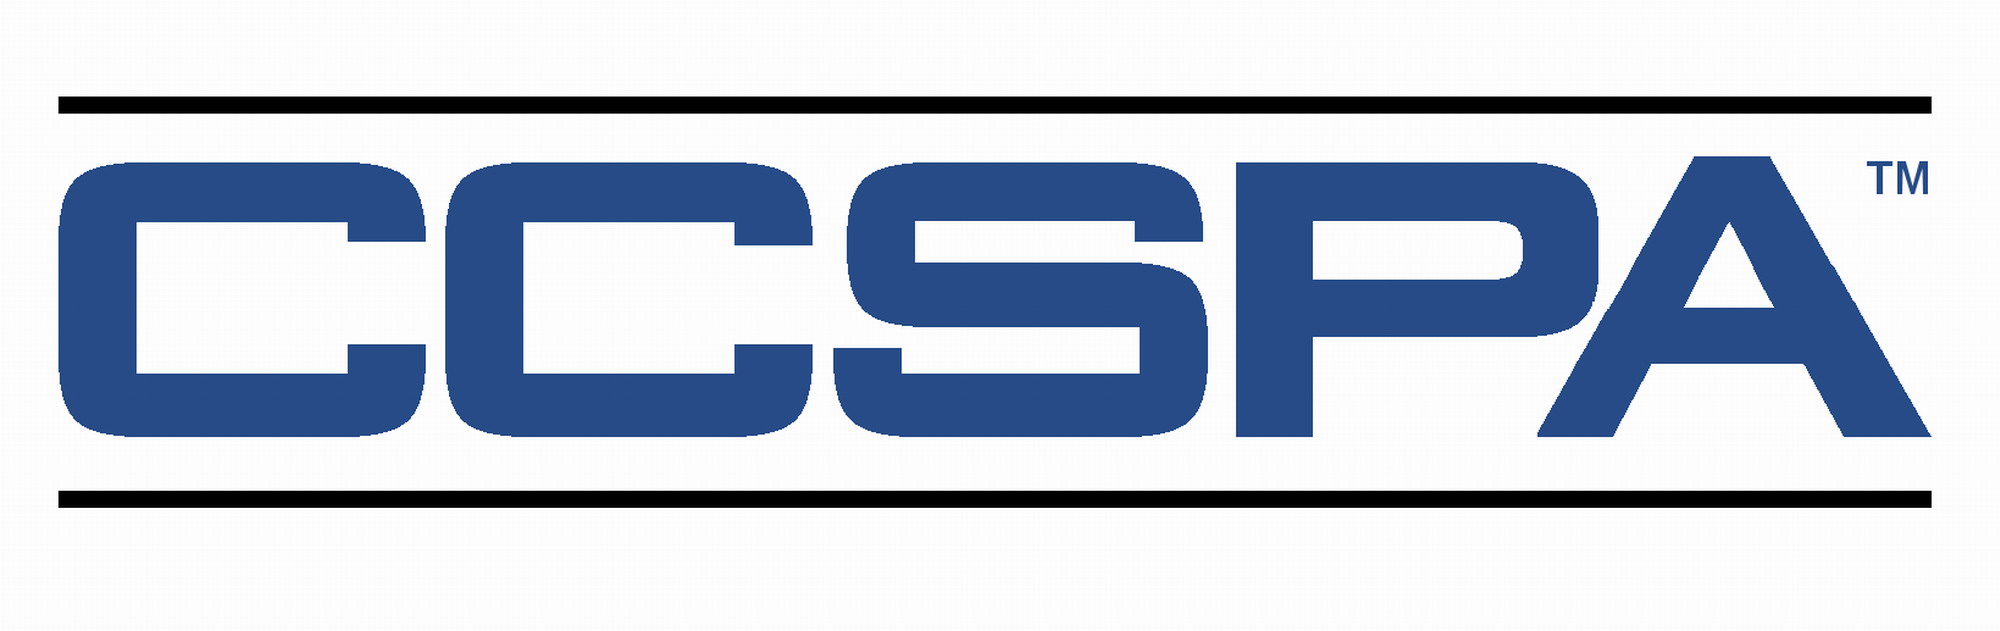 CCSPA logo